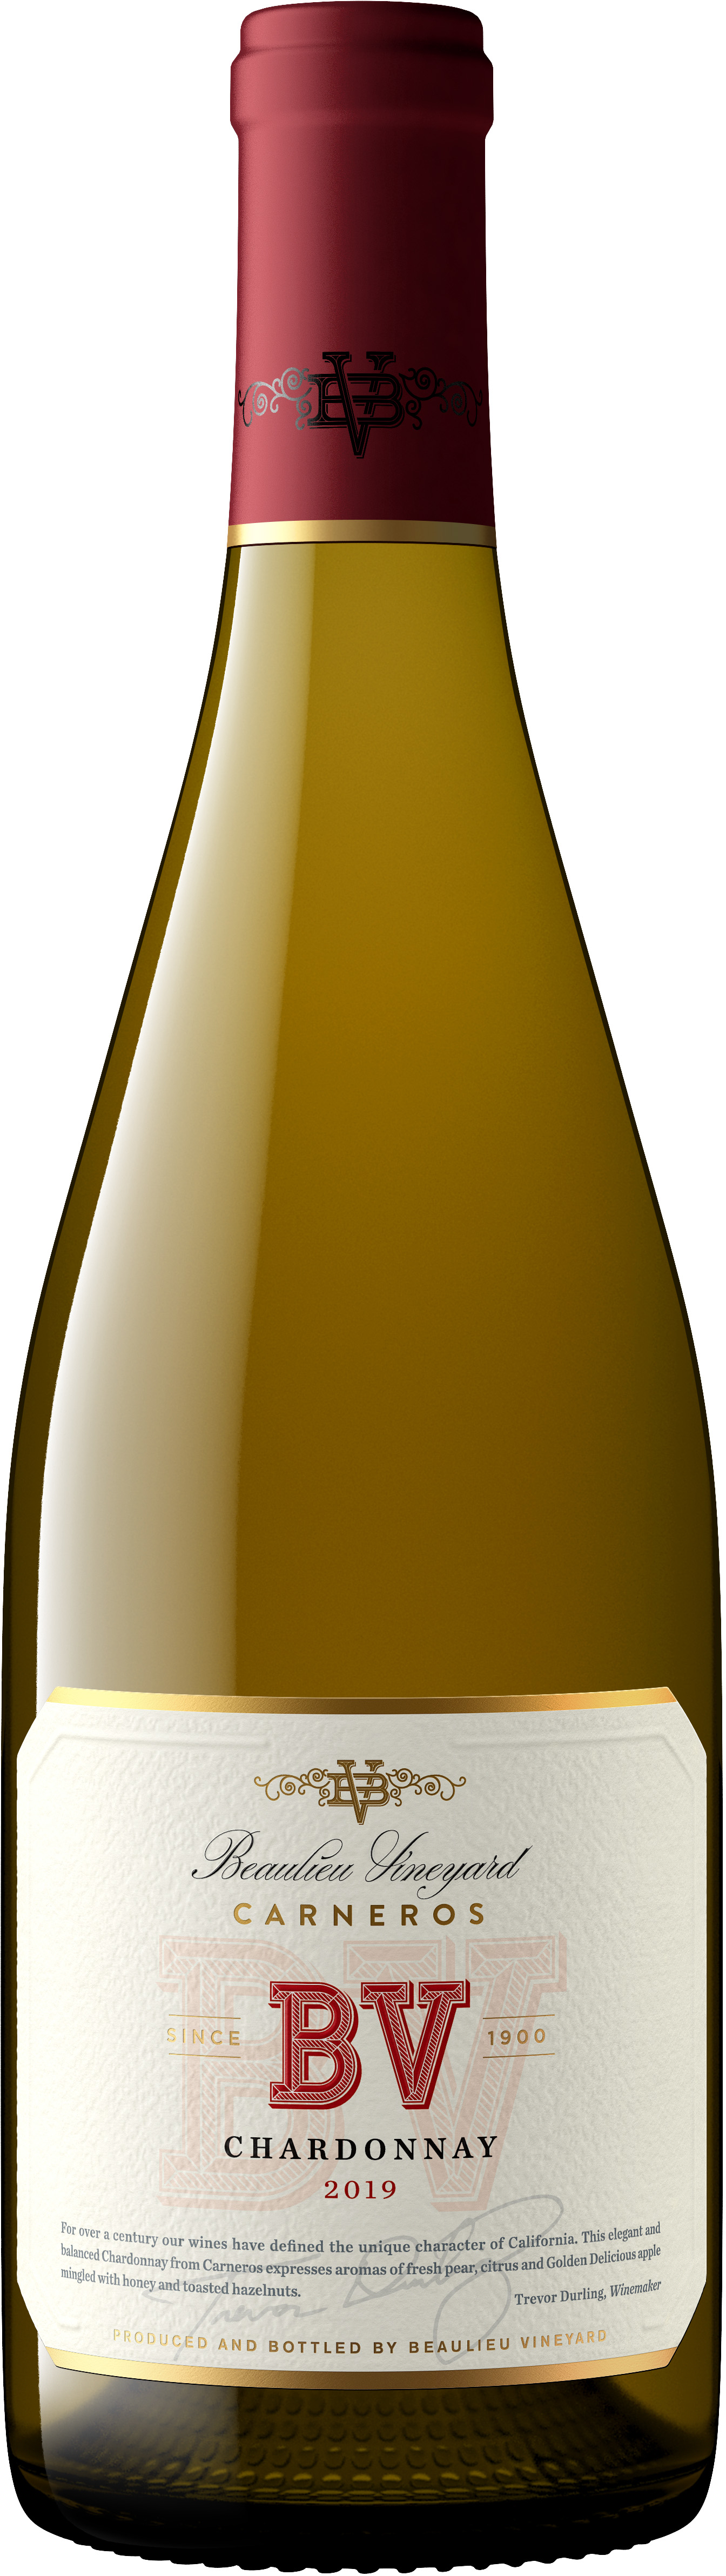 BV Carneros Chardonnay 2019 750ml-0